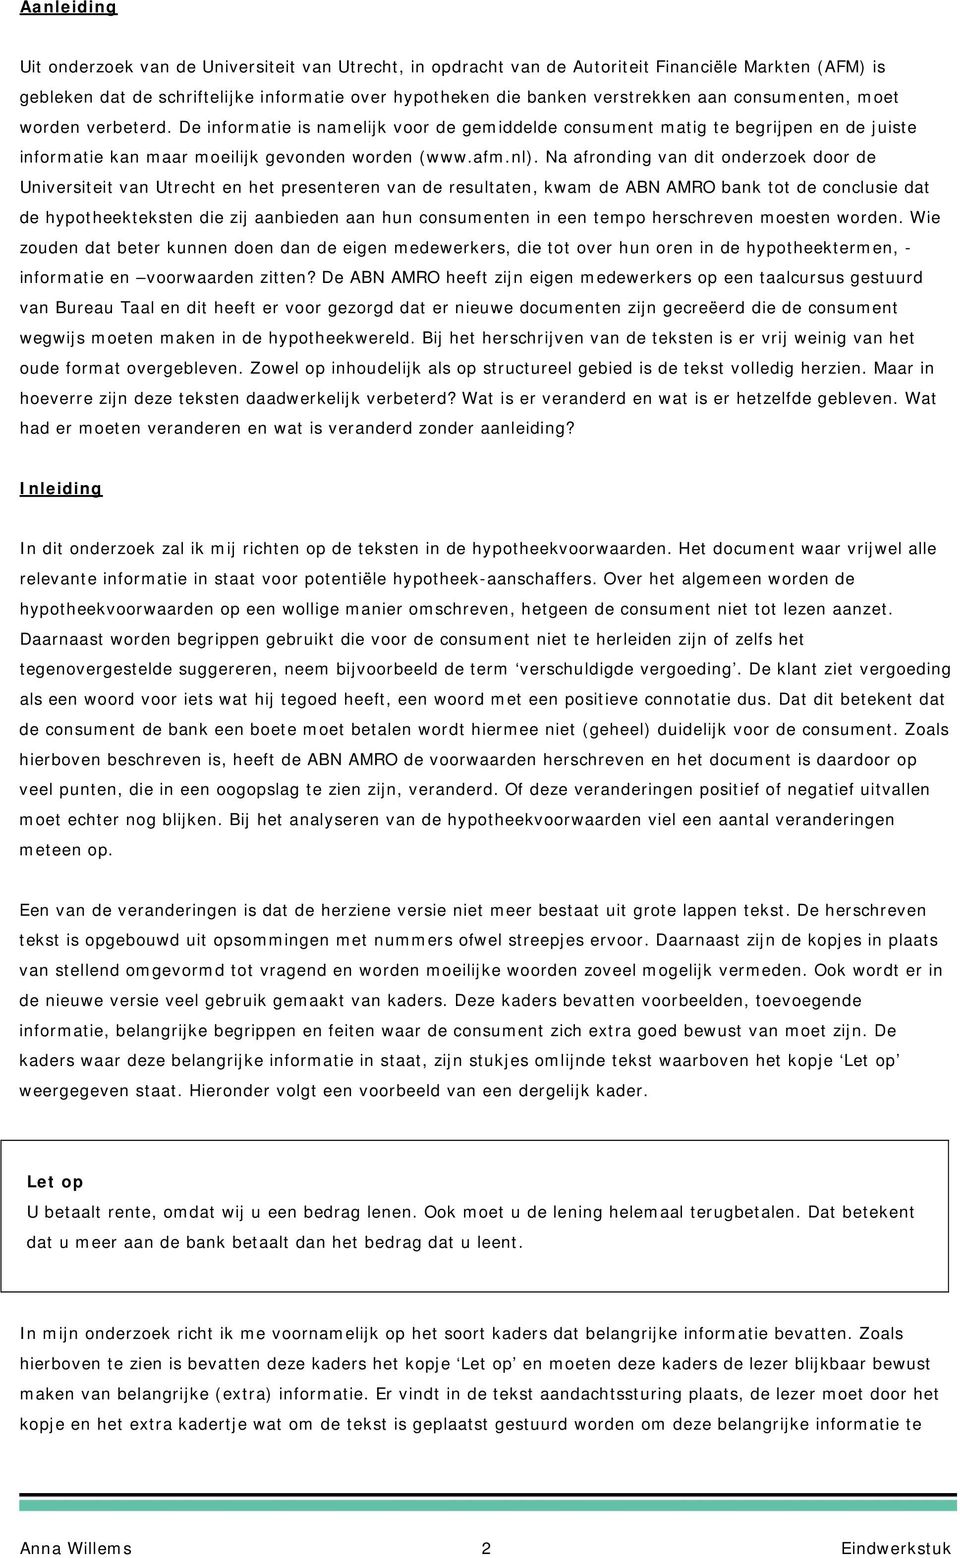 Na afronding van dit onderzoek door de Universiteit van Utrecht en het presenteren van de resultaten, kwam de ABN AMRO bank tot de conclusie dat de hypotheekteksten die zij aanbieden aan hun